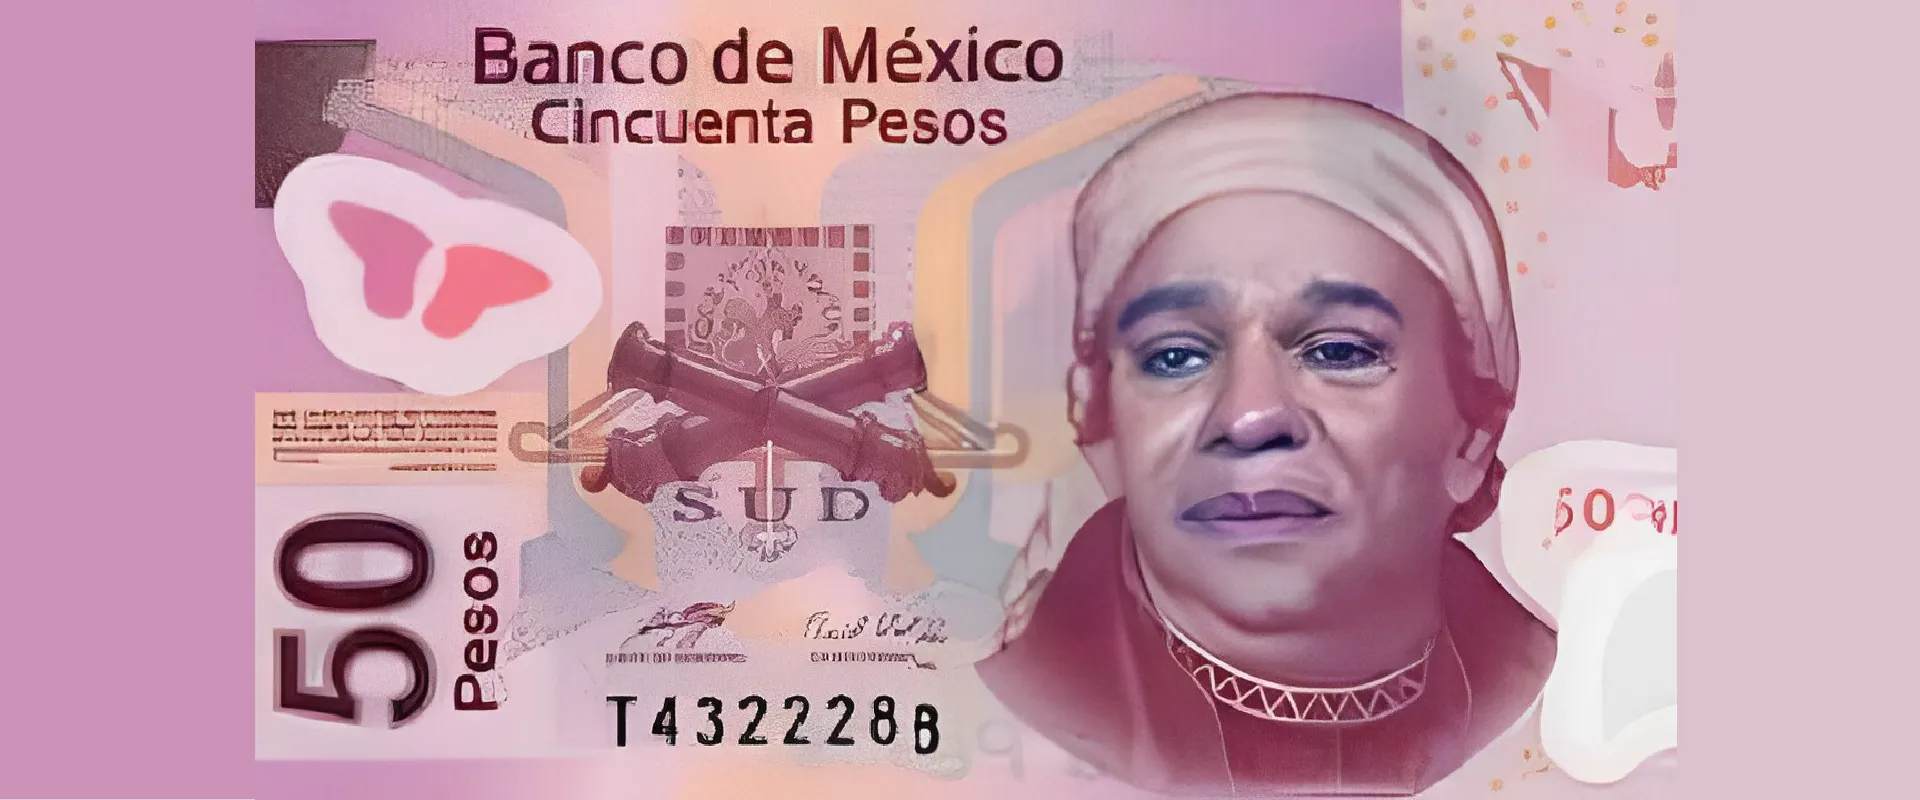 Circulan más de 100 mil billetes falsos, muchos de ellos con la cara de “Juanga”